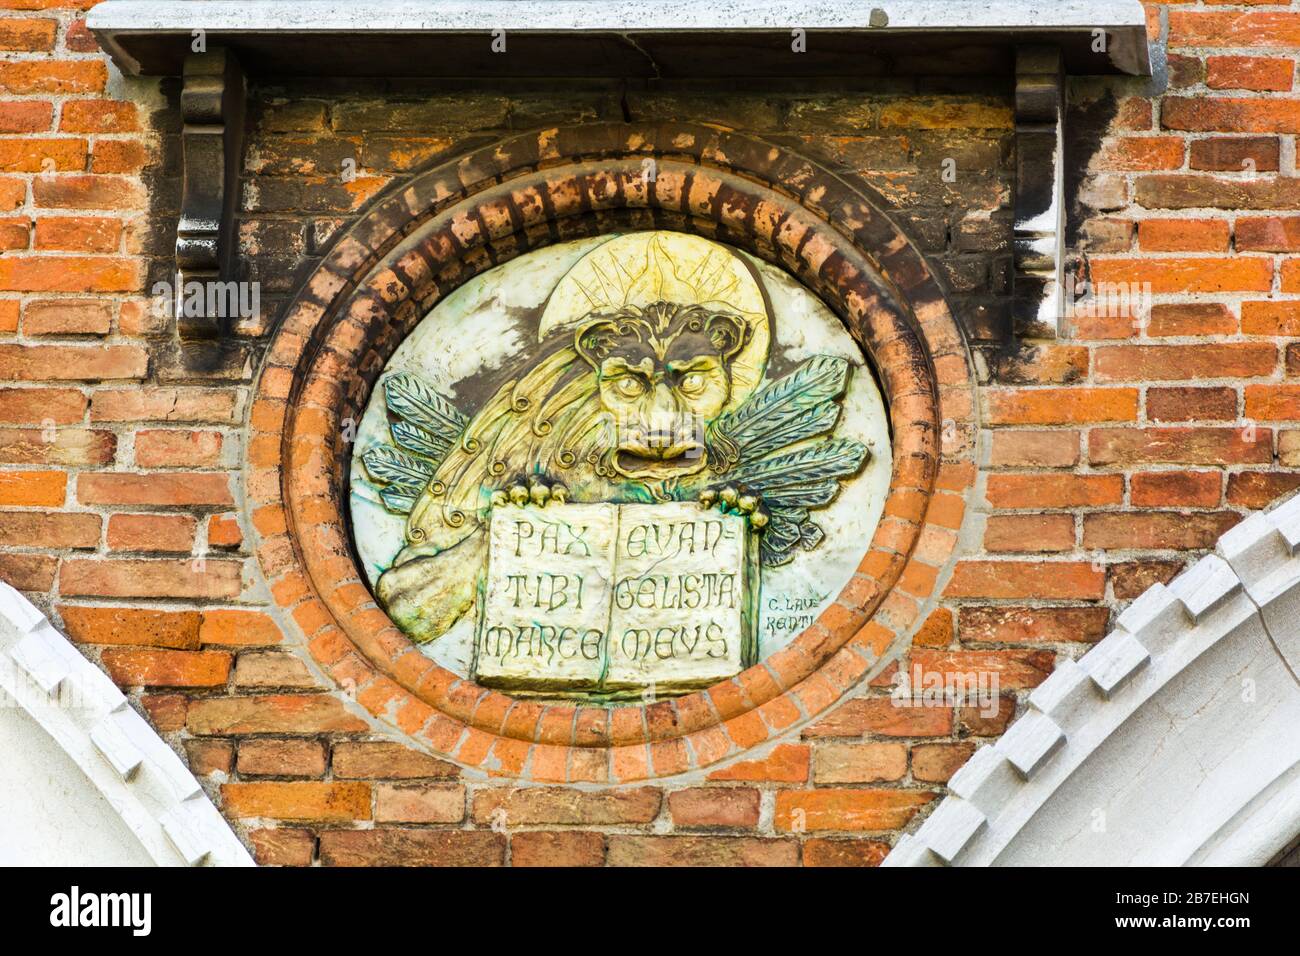 Venecia, Italia - 17 DE MAYO de 2019: Escudo de armas de San Marcos, patrón de Venecia, la pared del mercado de pescado de Venecia Foto de stock